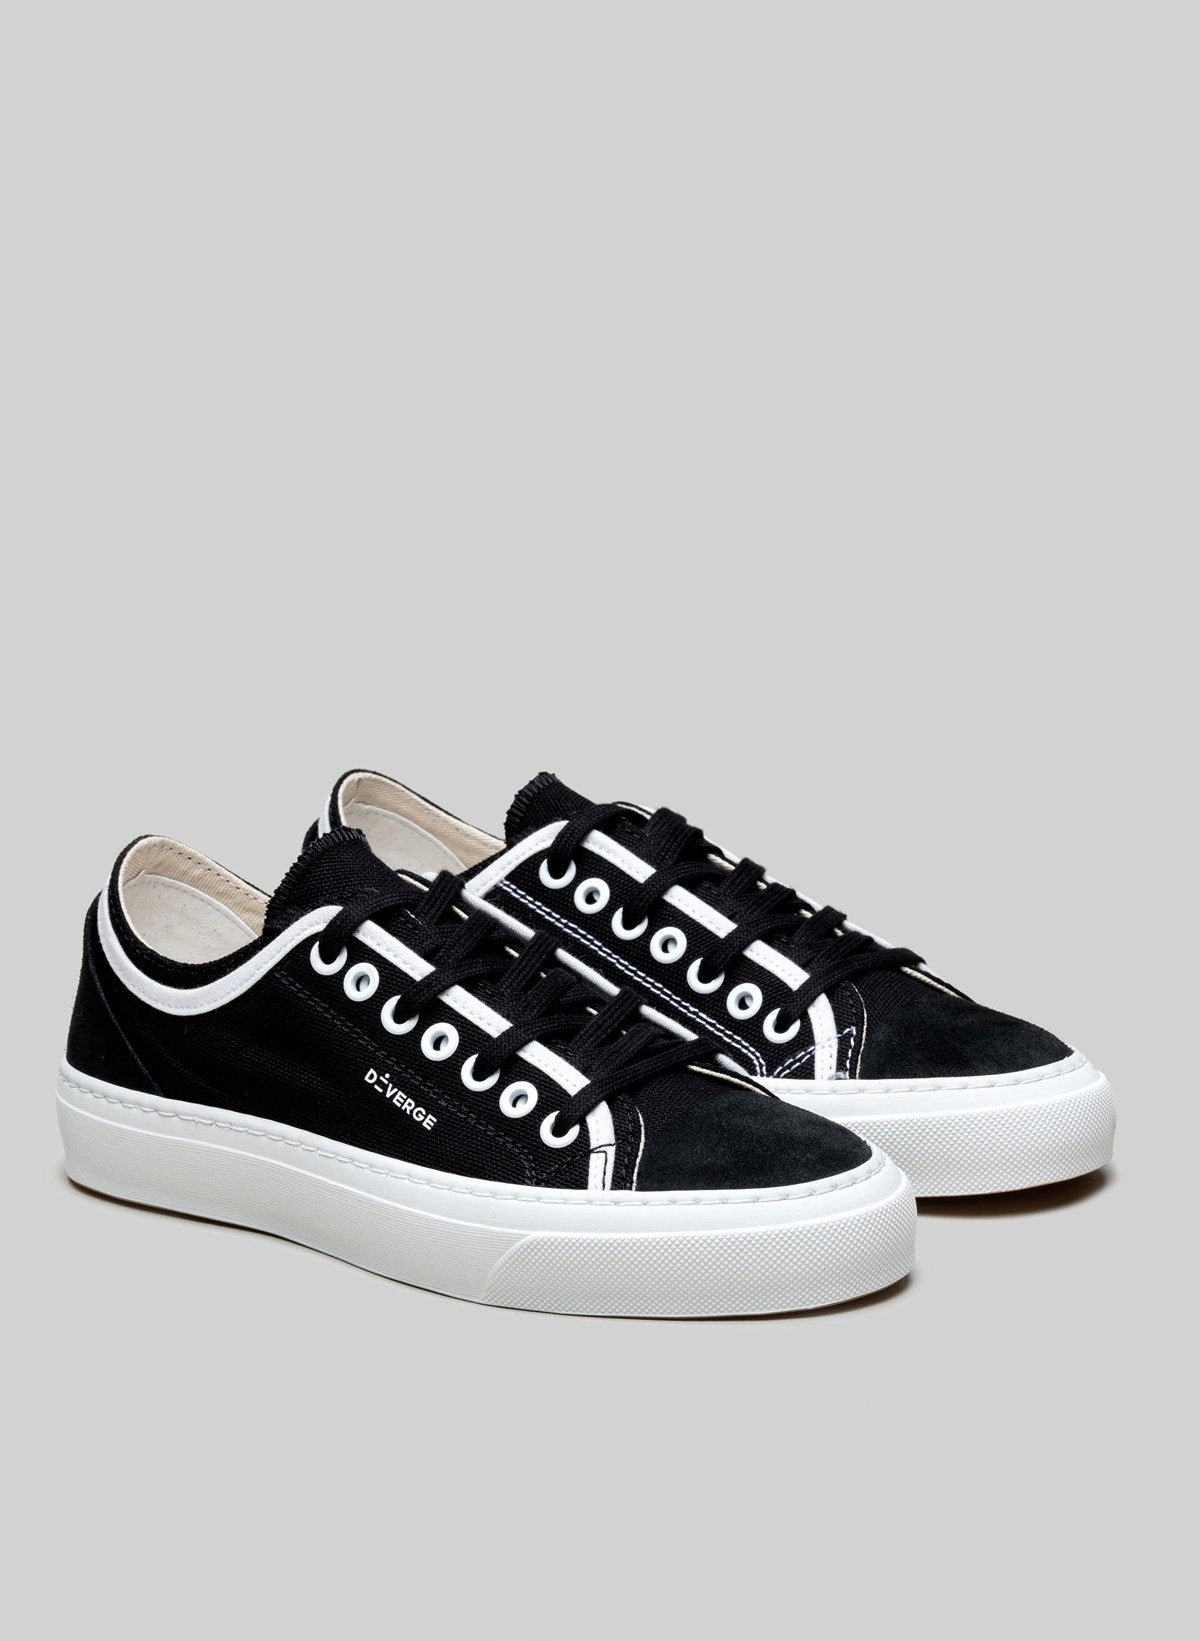 Low top bianco e nero sneakers di Diverge, che promuove l'impatto sociale e le scarpe personalizzate.